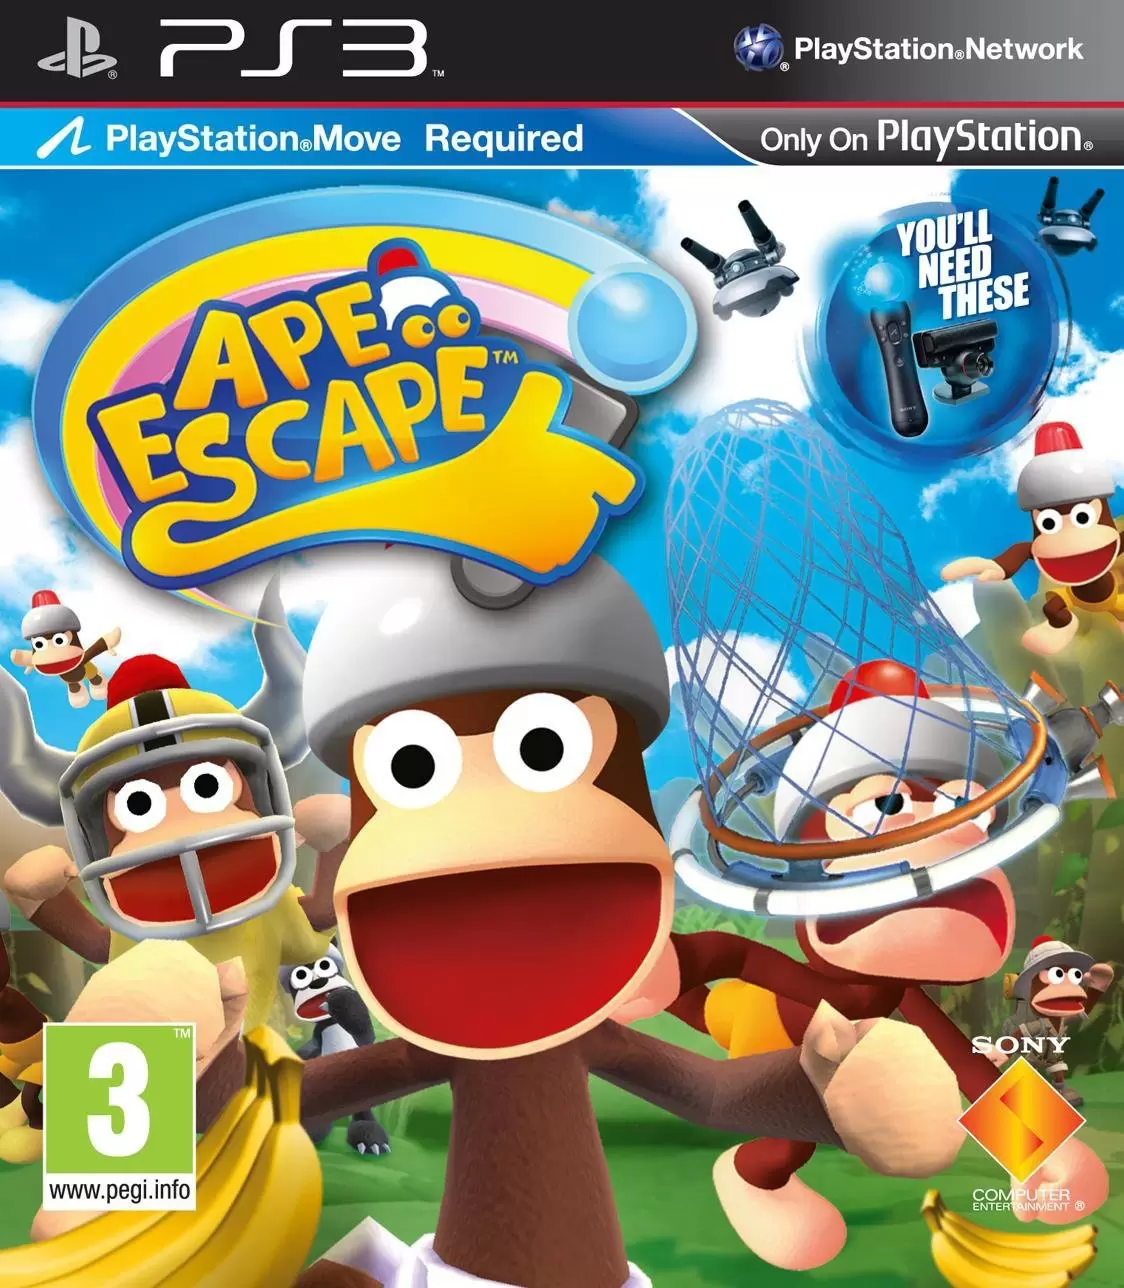 PS3 Games - Ape escape